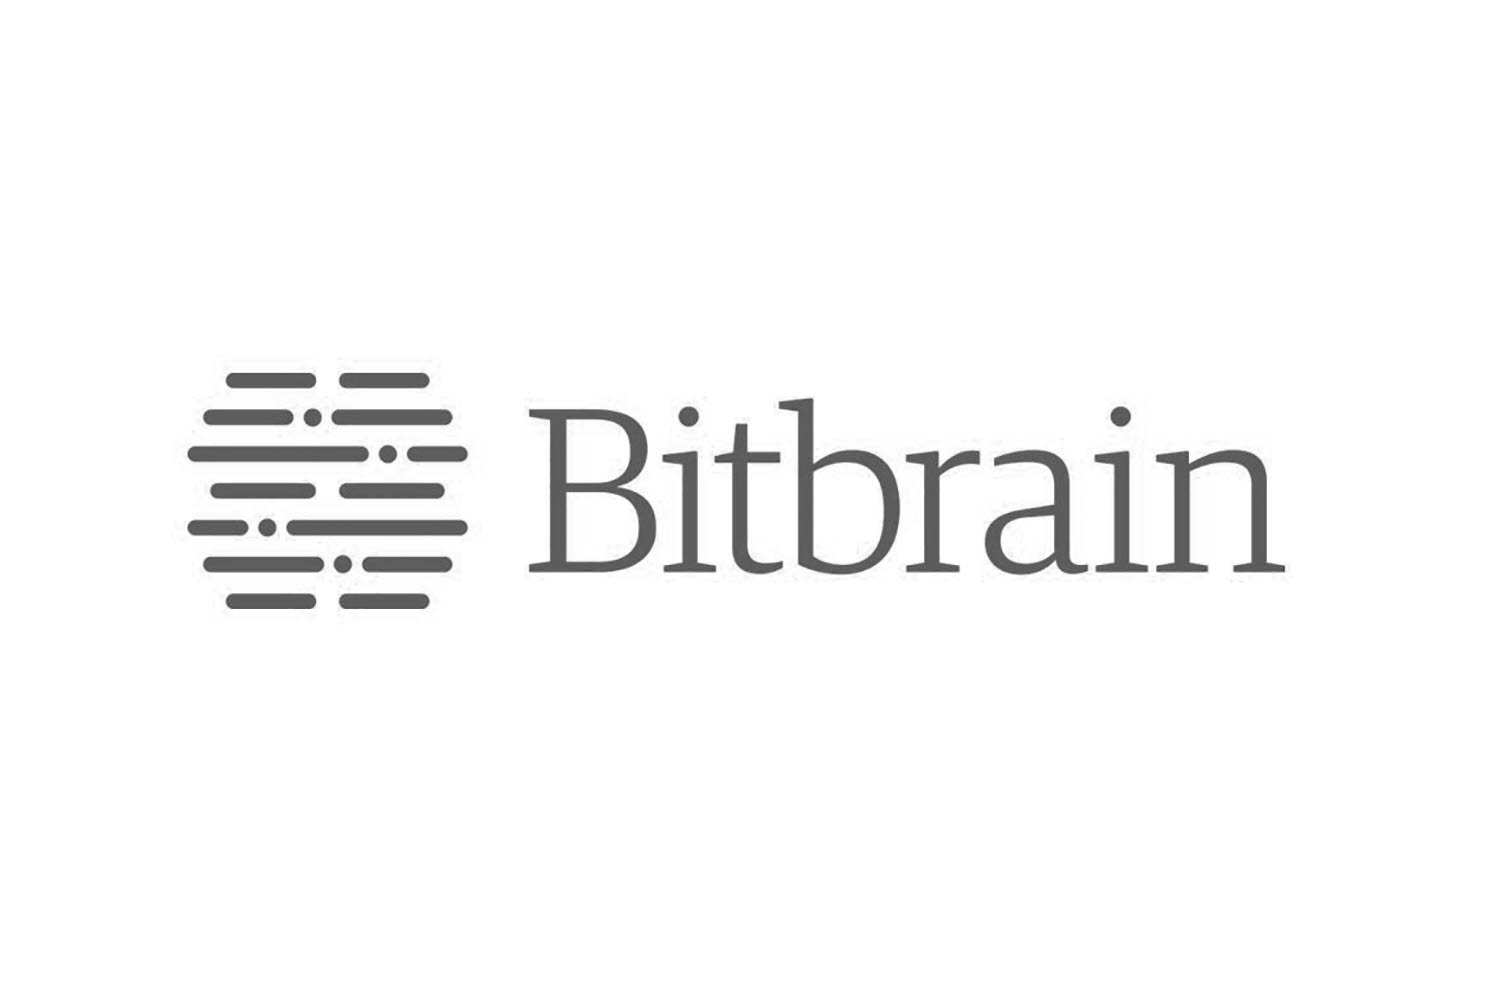 BitBrain logo